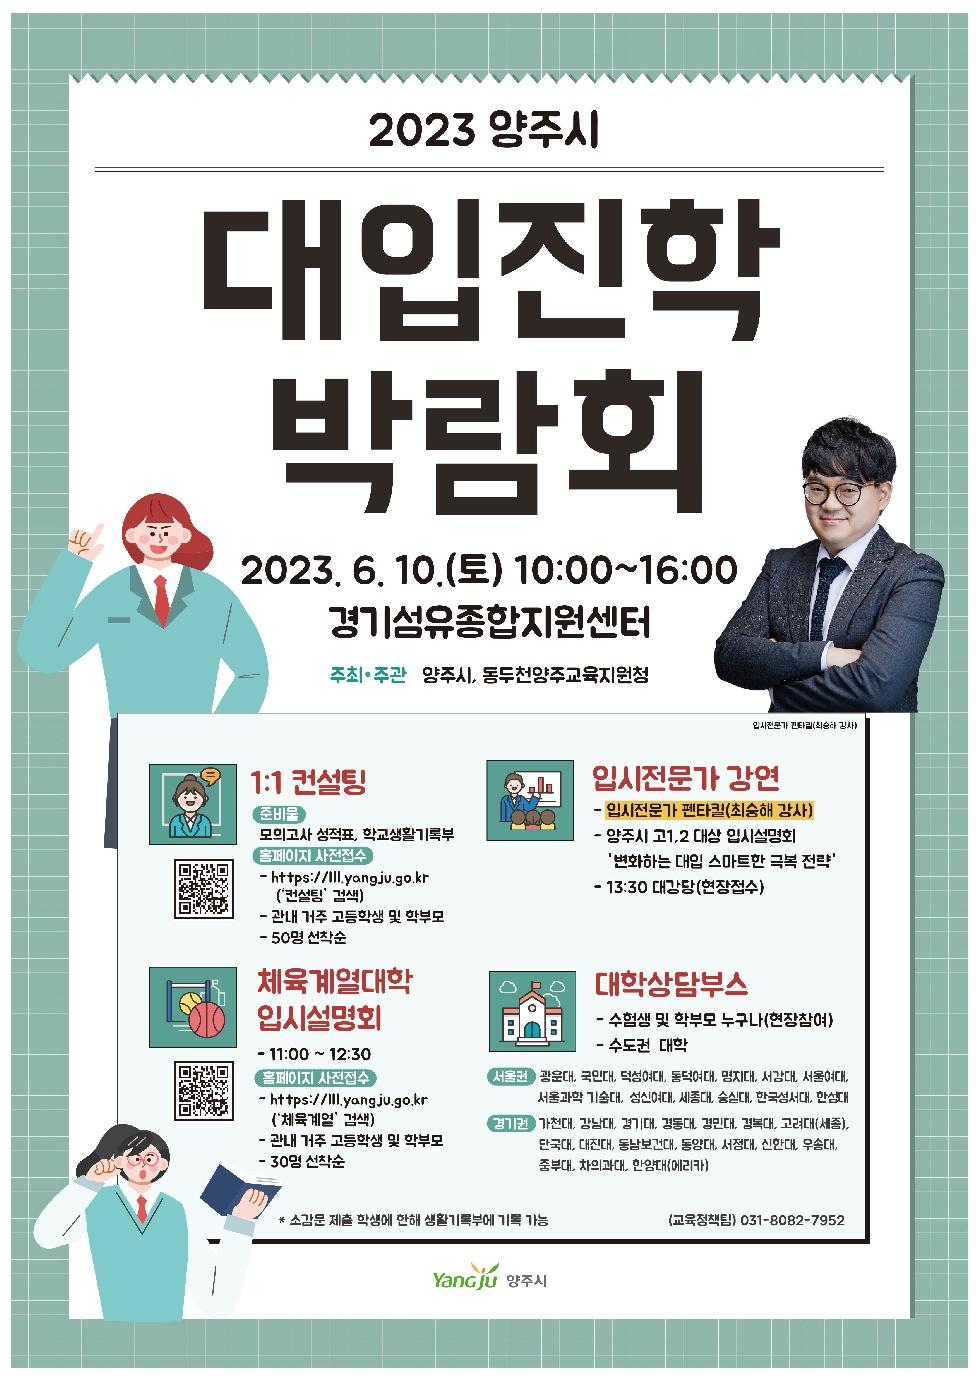 양주시, 2023년 대입 진학박람회 개최